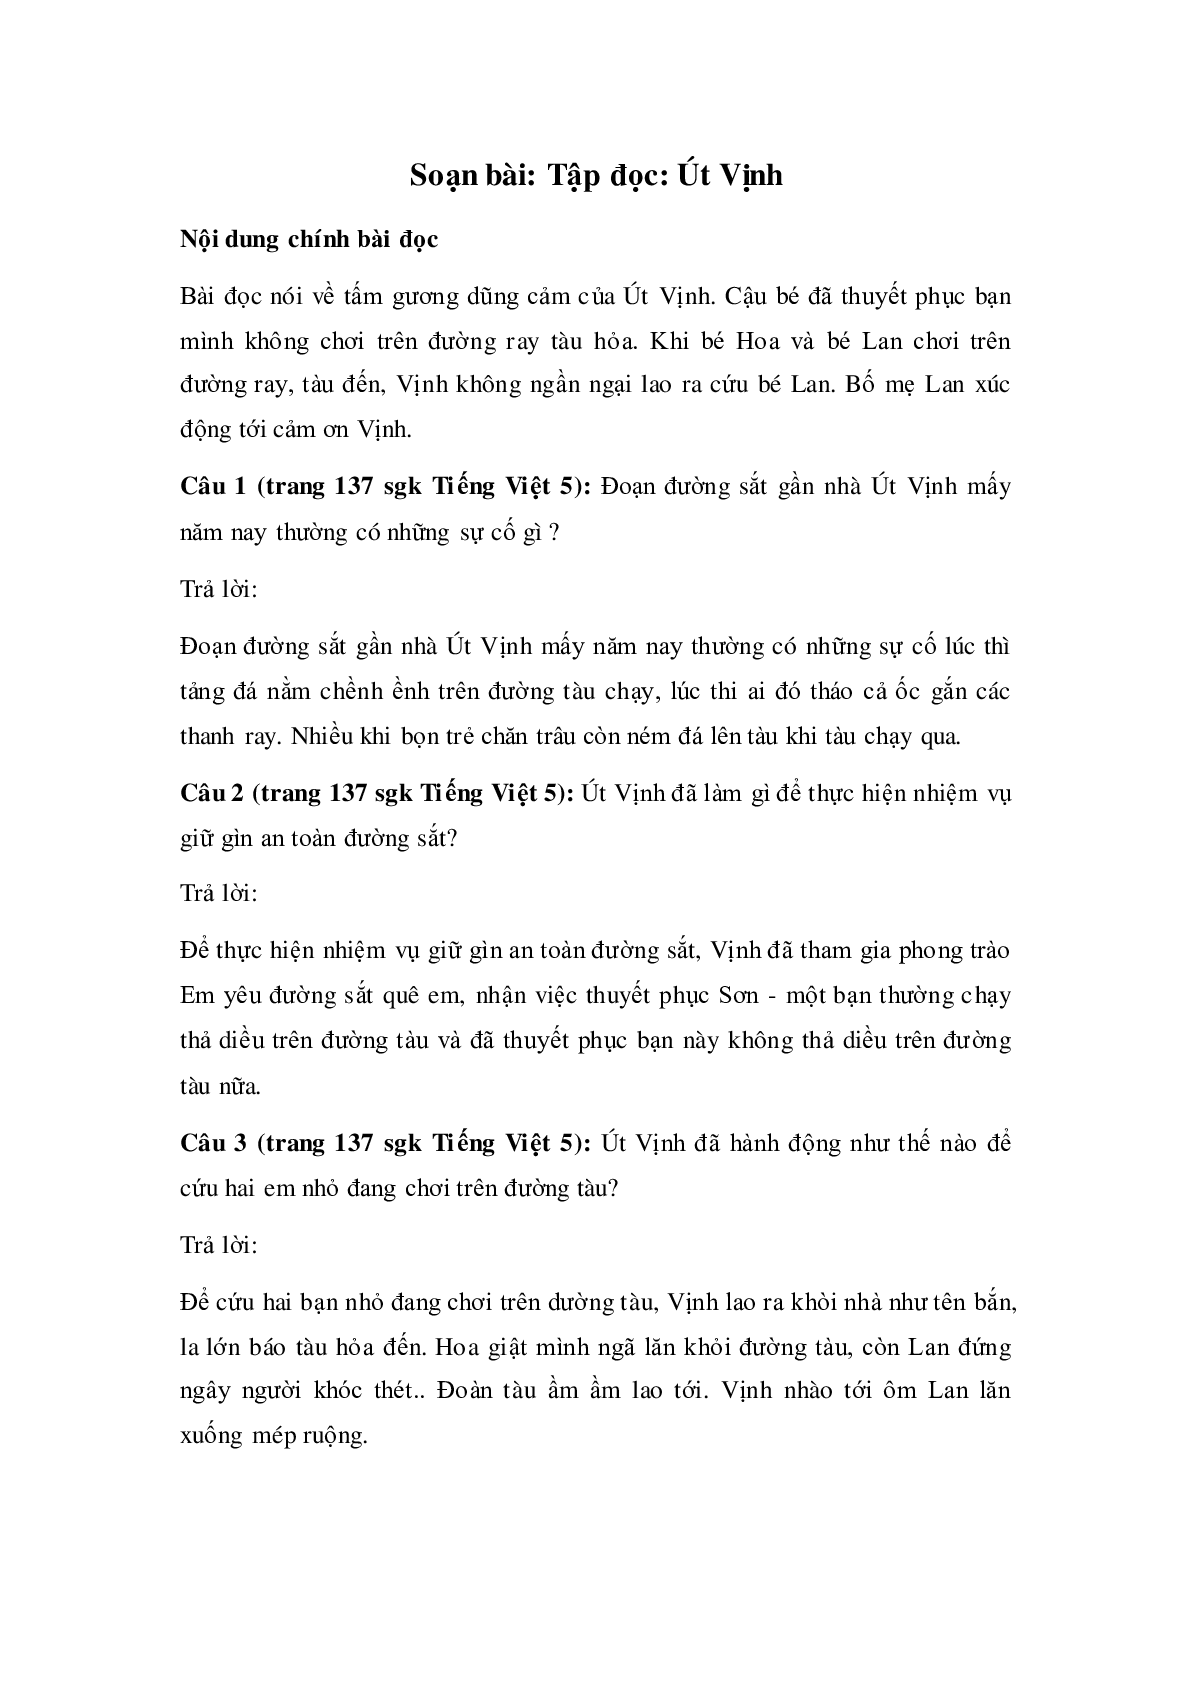 Soạn Tiếng Việt lớp 5: Tập đọc: Út Vịnh mới nhất (trang 1)